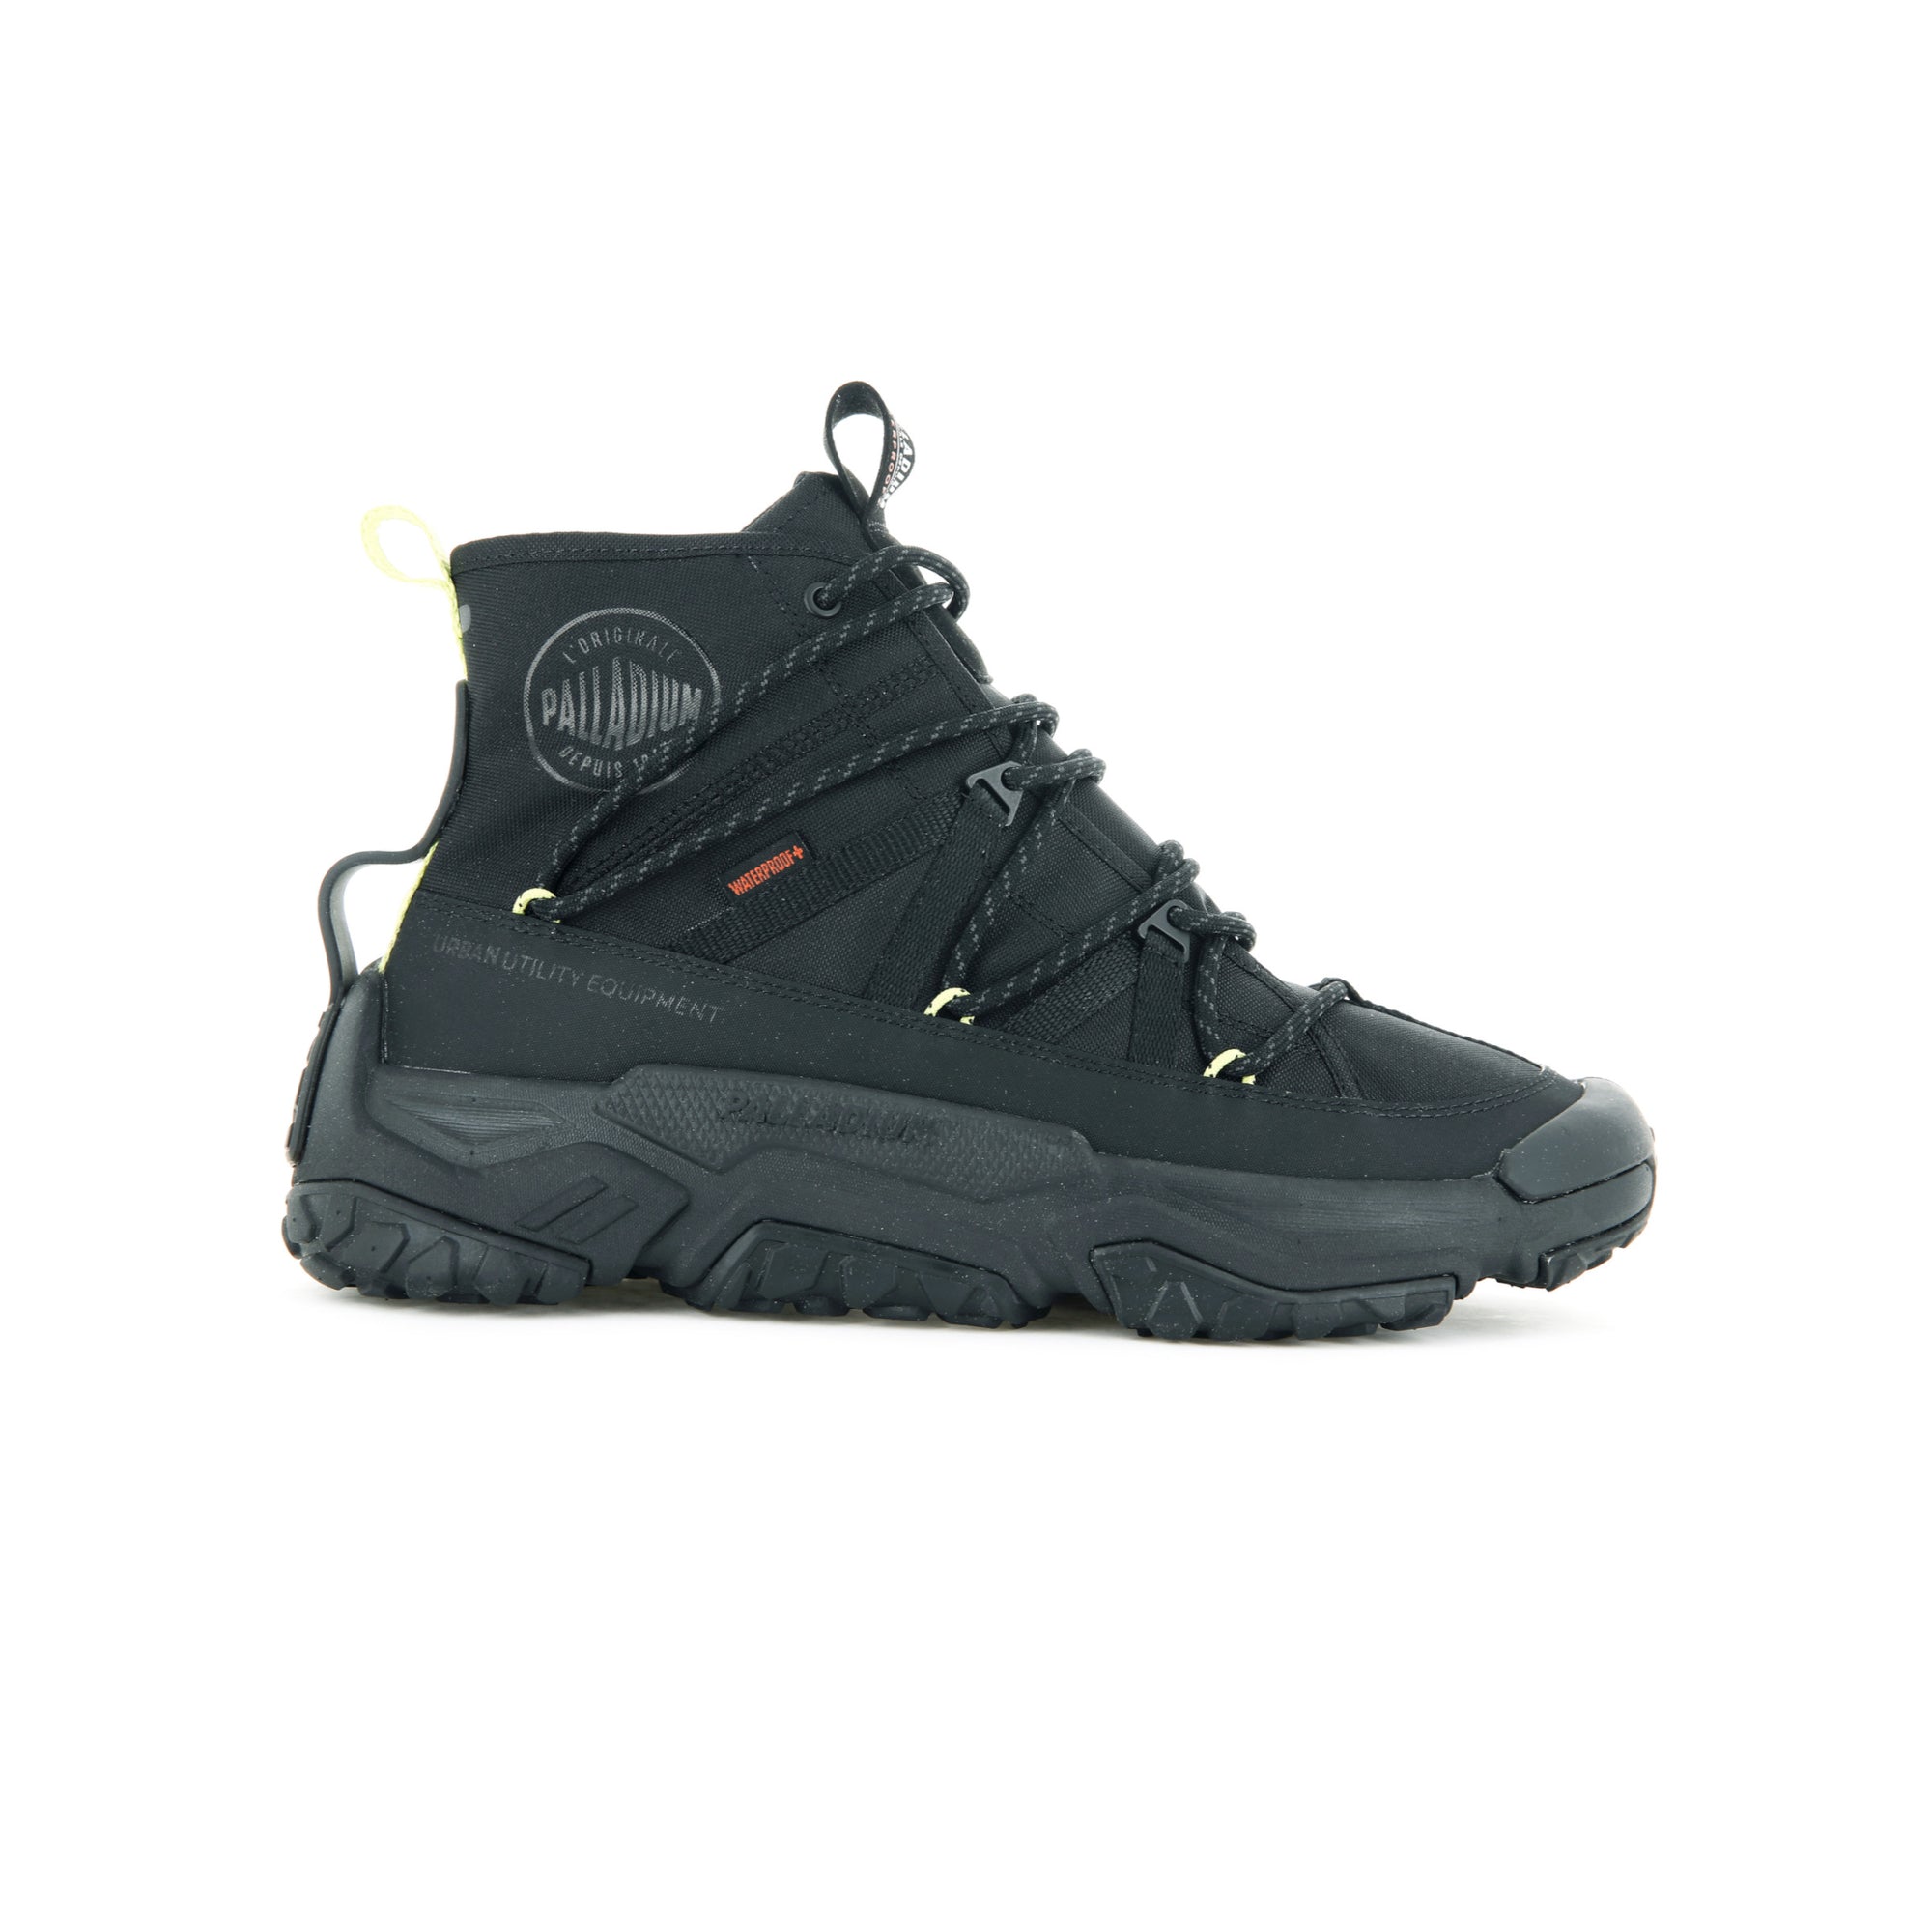 Off Grid Cross Waterproof Sneaker - Black/Black